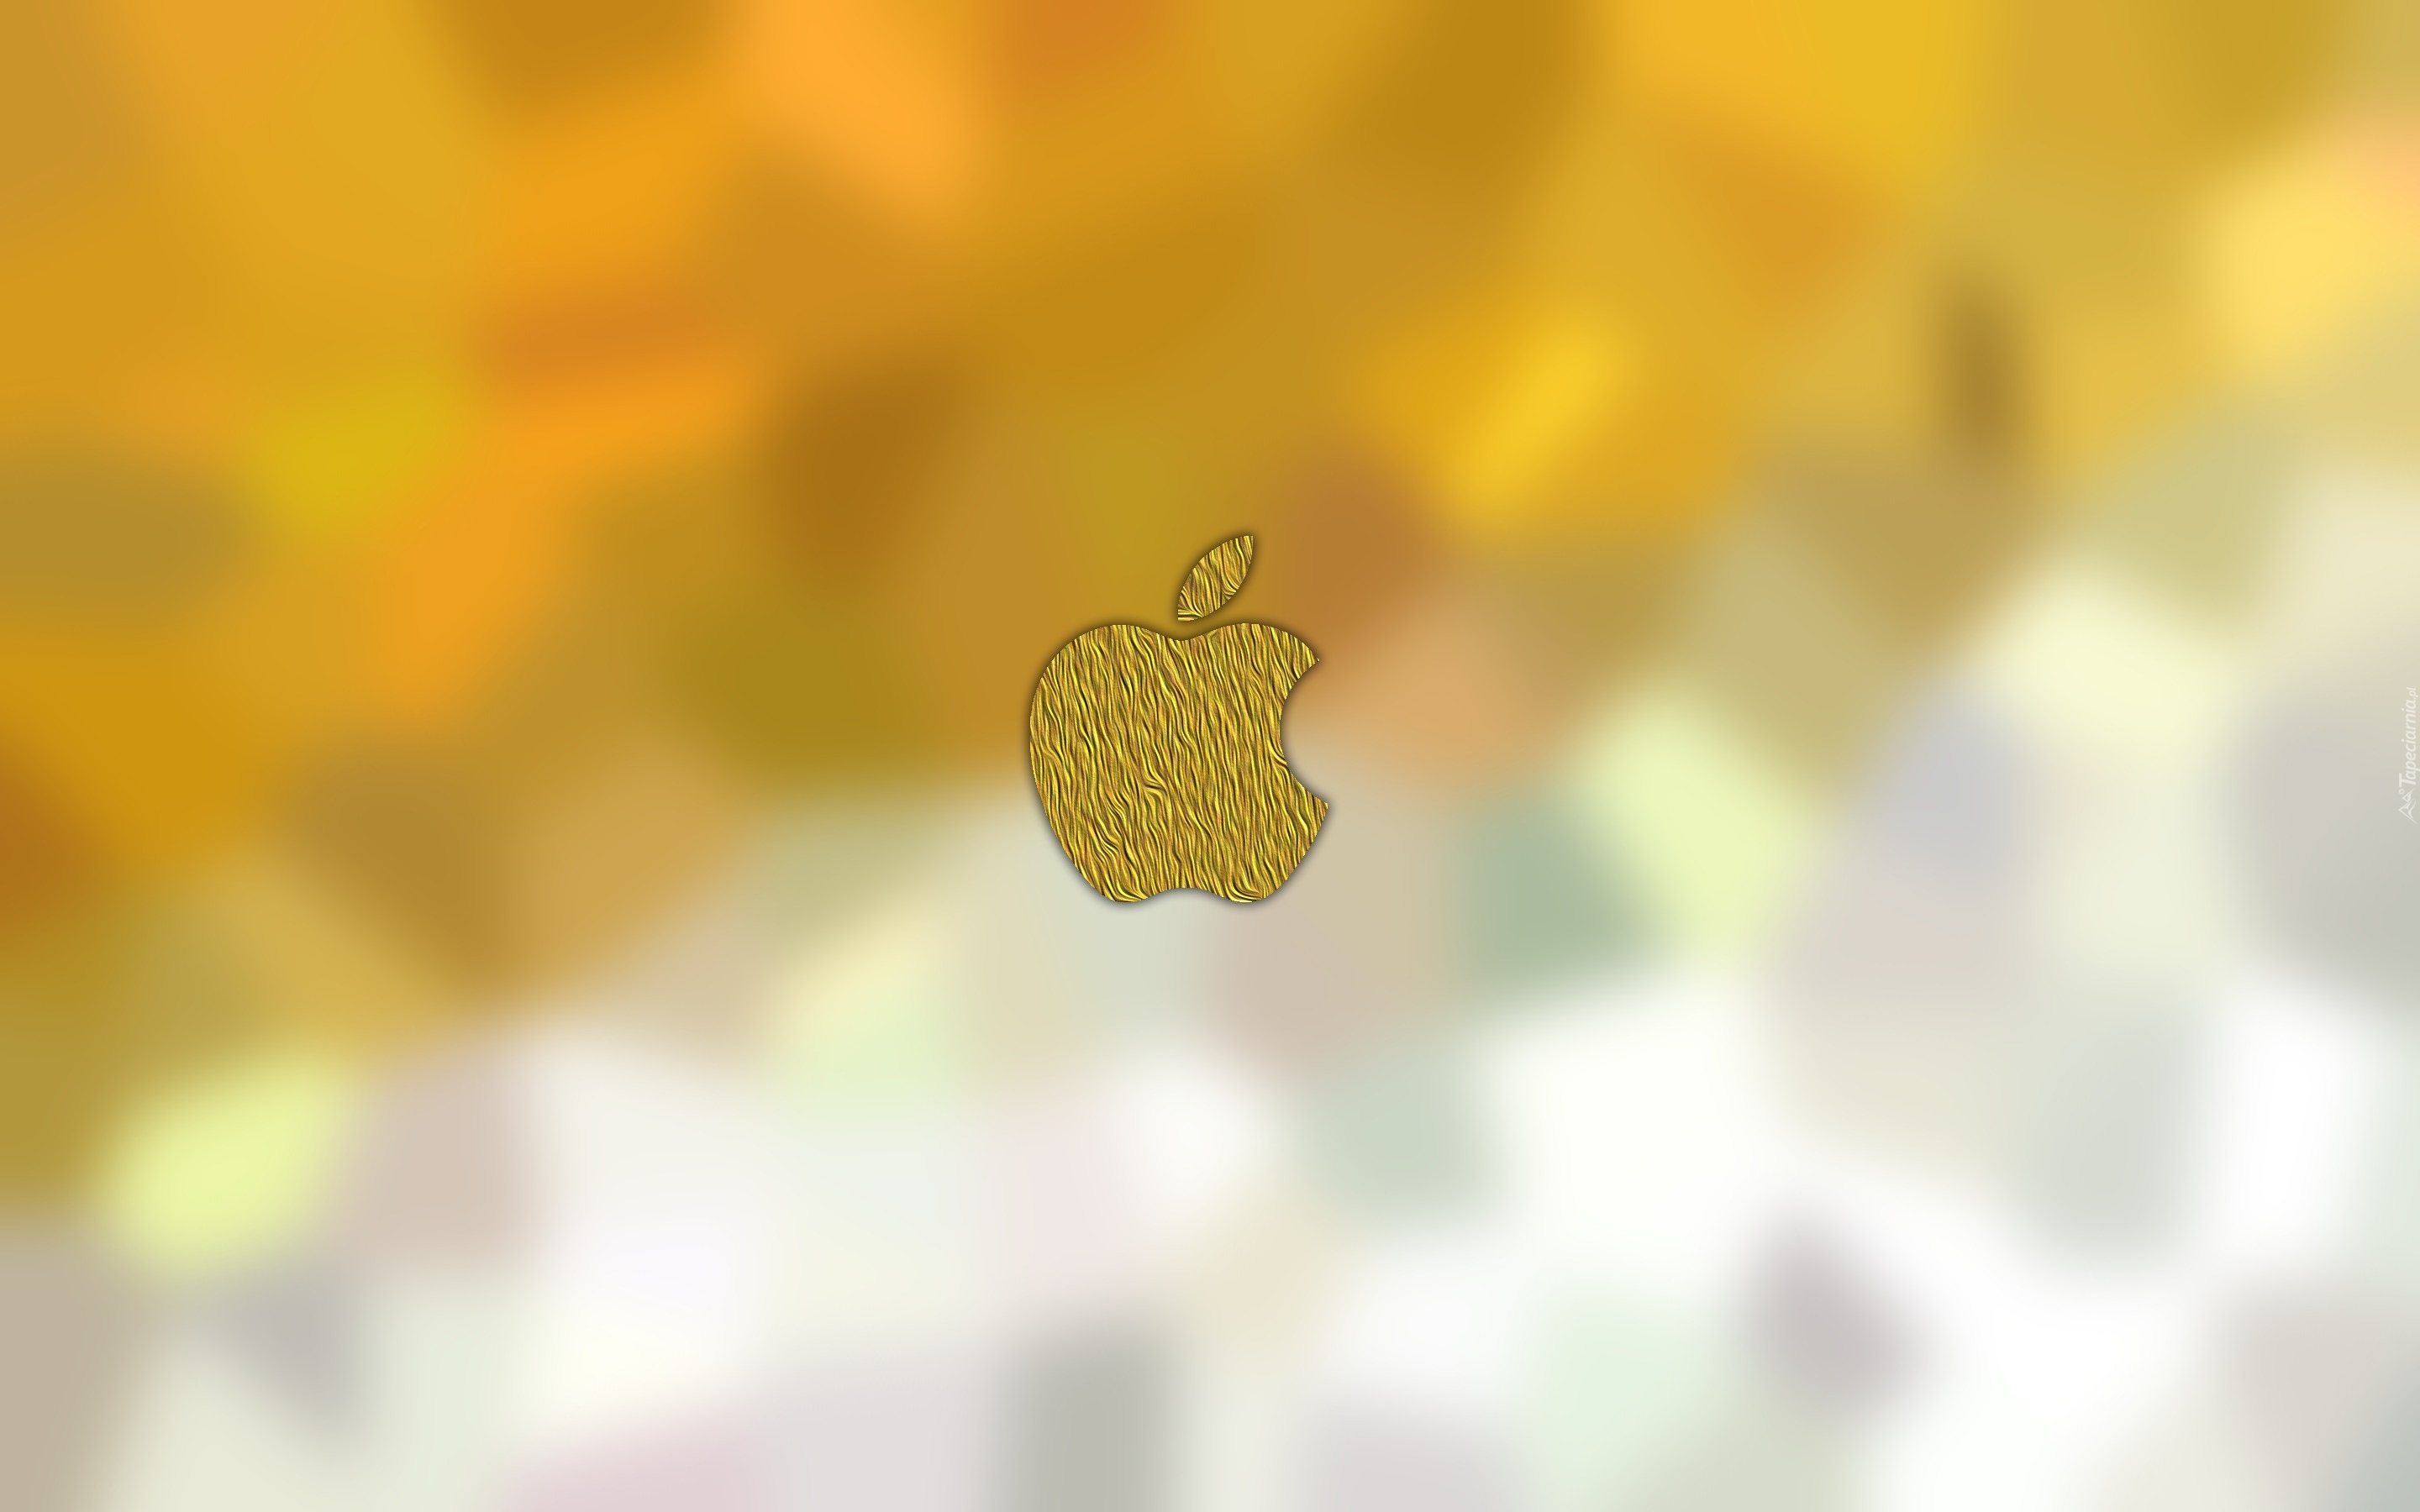 Logo, System operacyjny, Apple, Jabłko, Rozmycie